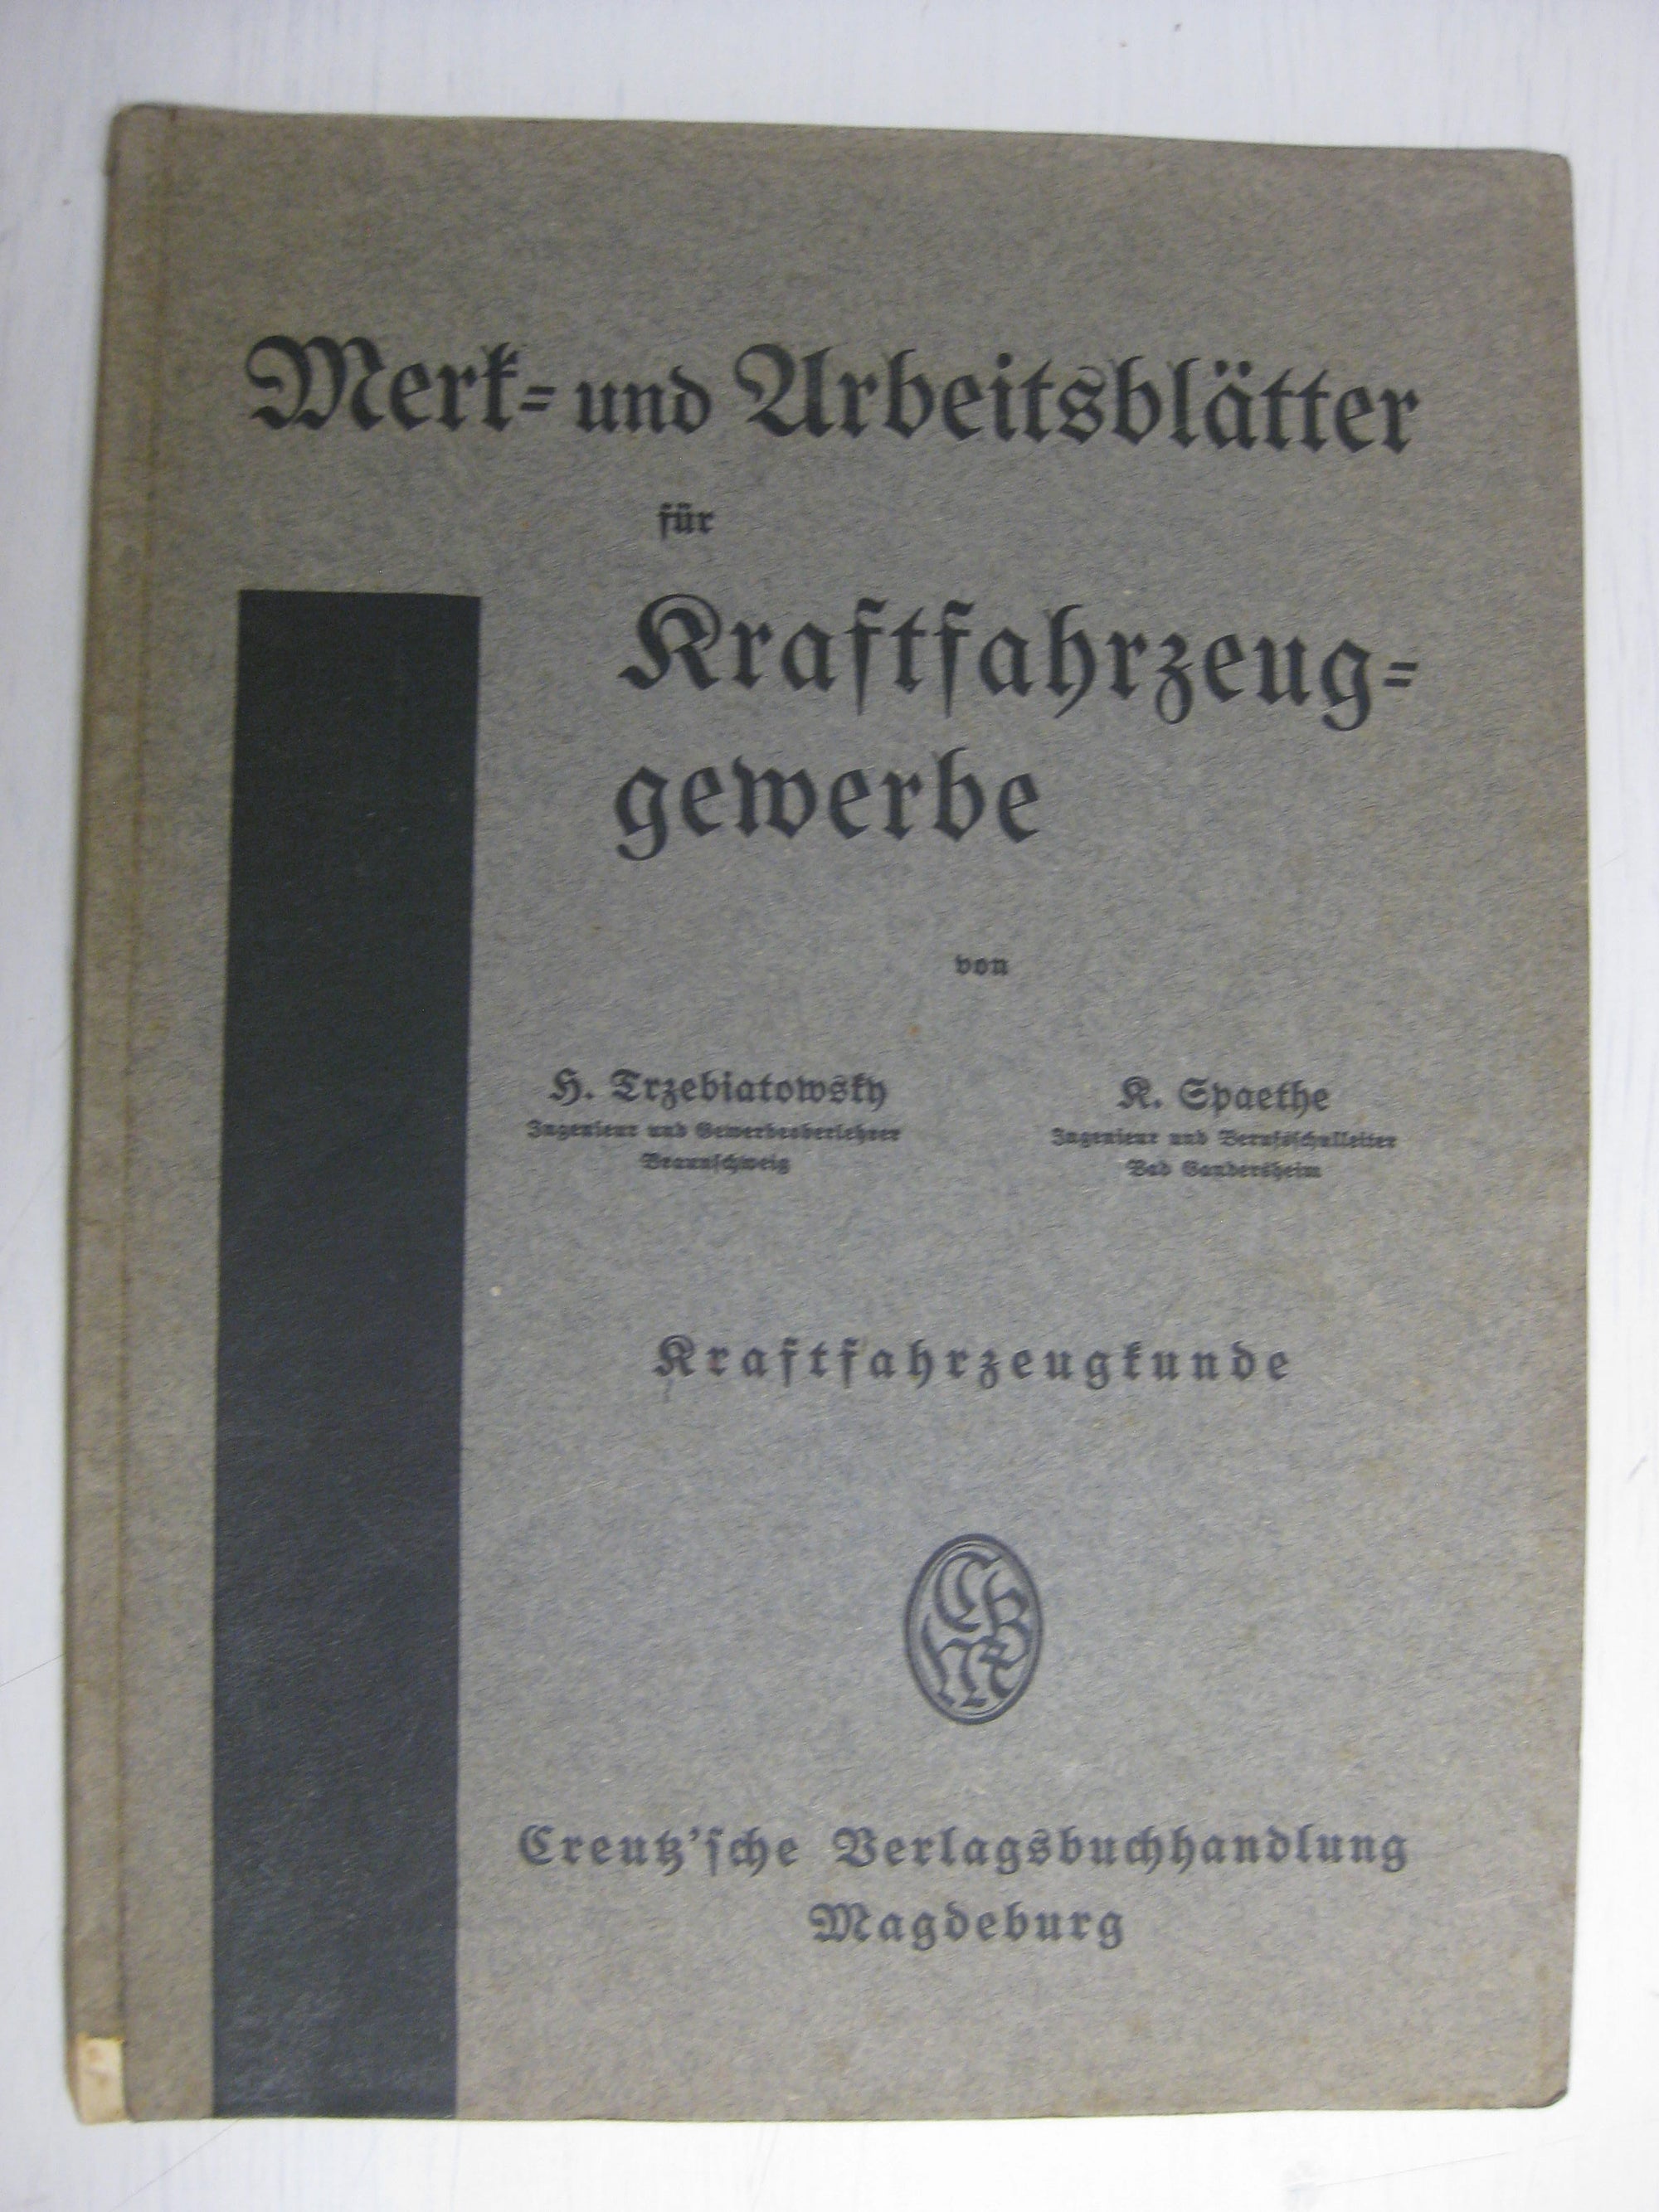 Originalausgabe  Werk- und Arbeitsblätter für Kraftfahrzeuggewerbe KFZ